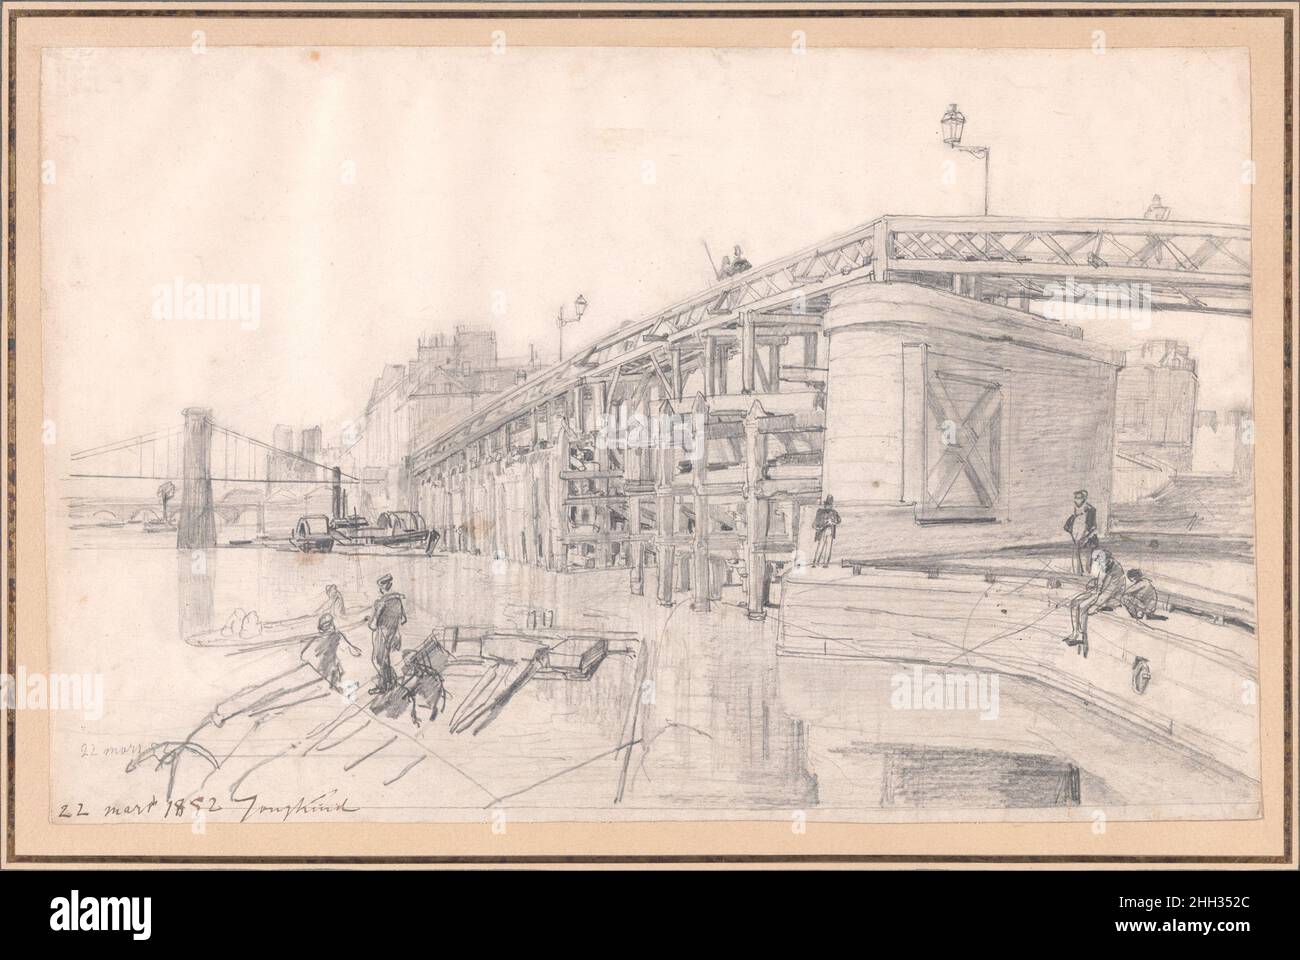 L'Estacade à Paris 1852 Johan Barthold Jongkind dans la période de 1849 à 1855, le paysage urbain parisien, en particulier les rives et ponts de la Seine, a occupé Jongkind comme sujet principal.La structure qu'il a esquissée ici est le Pont de l'Estacade, un pont reliant la rive droite à l'extrémité est de l'Ile Saint-Louis.(Plusieurs itérations du pont se tenaient à cet endroit de 1818 à 1932.)L'artiste a utilisé ce dessin comme base pour deux compositions peintes, dont une qu'il a exposée au salon de 1853, où il a été acquis par l'Etat français.L'Estacade à Paris.Joh Banque D'Images